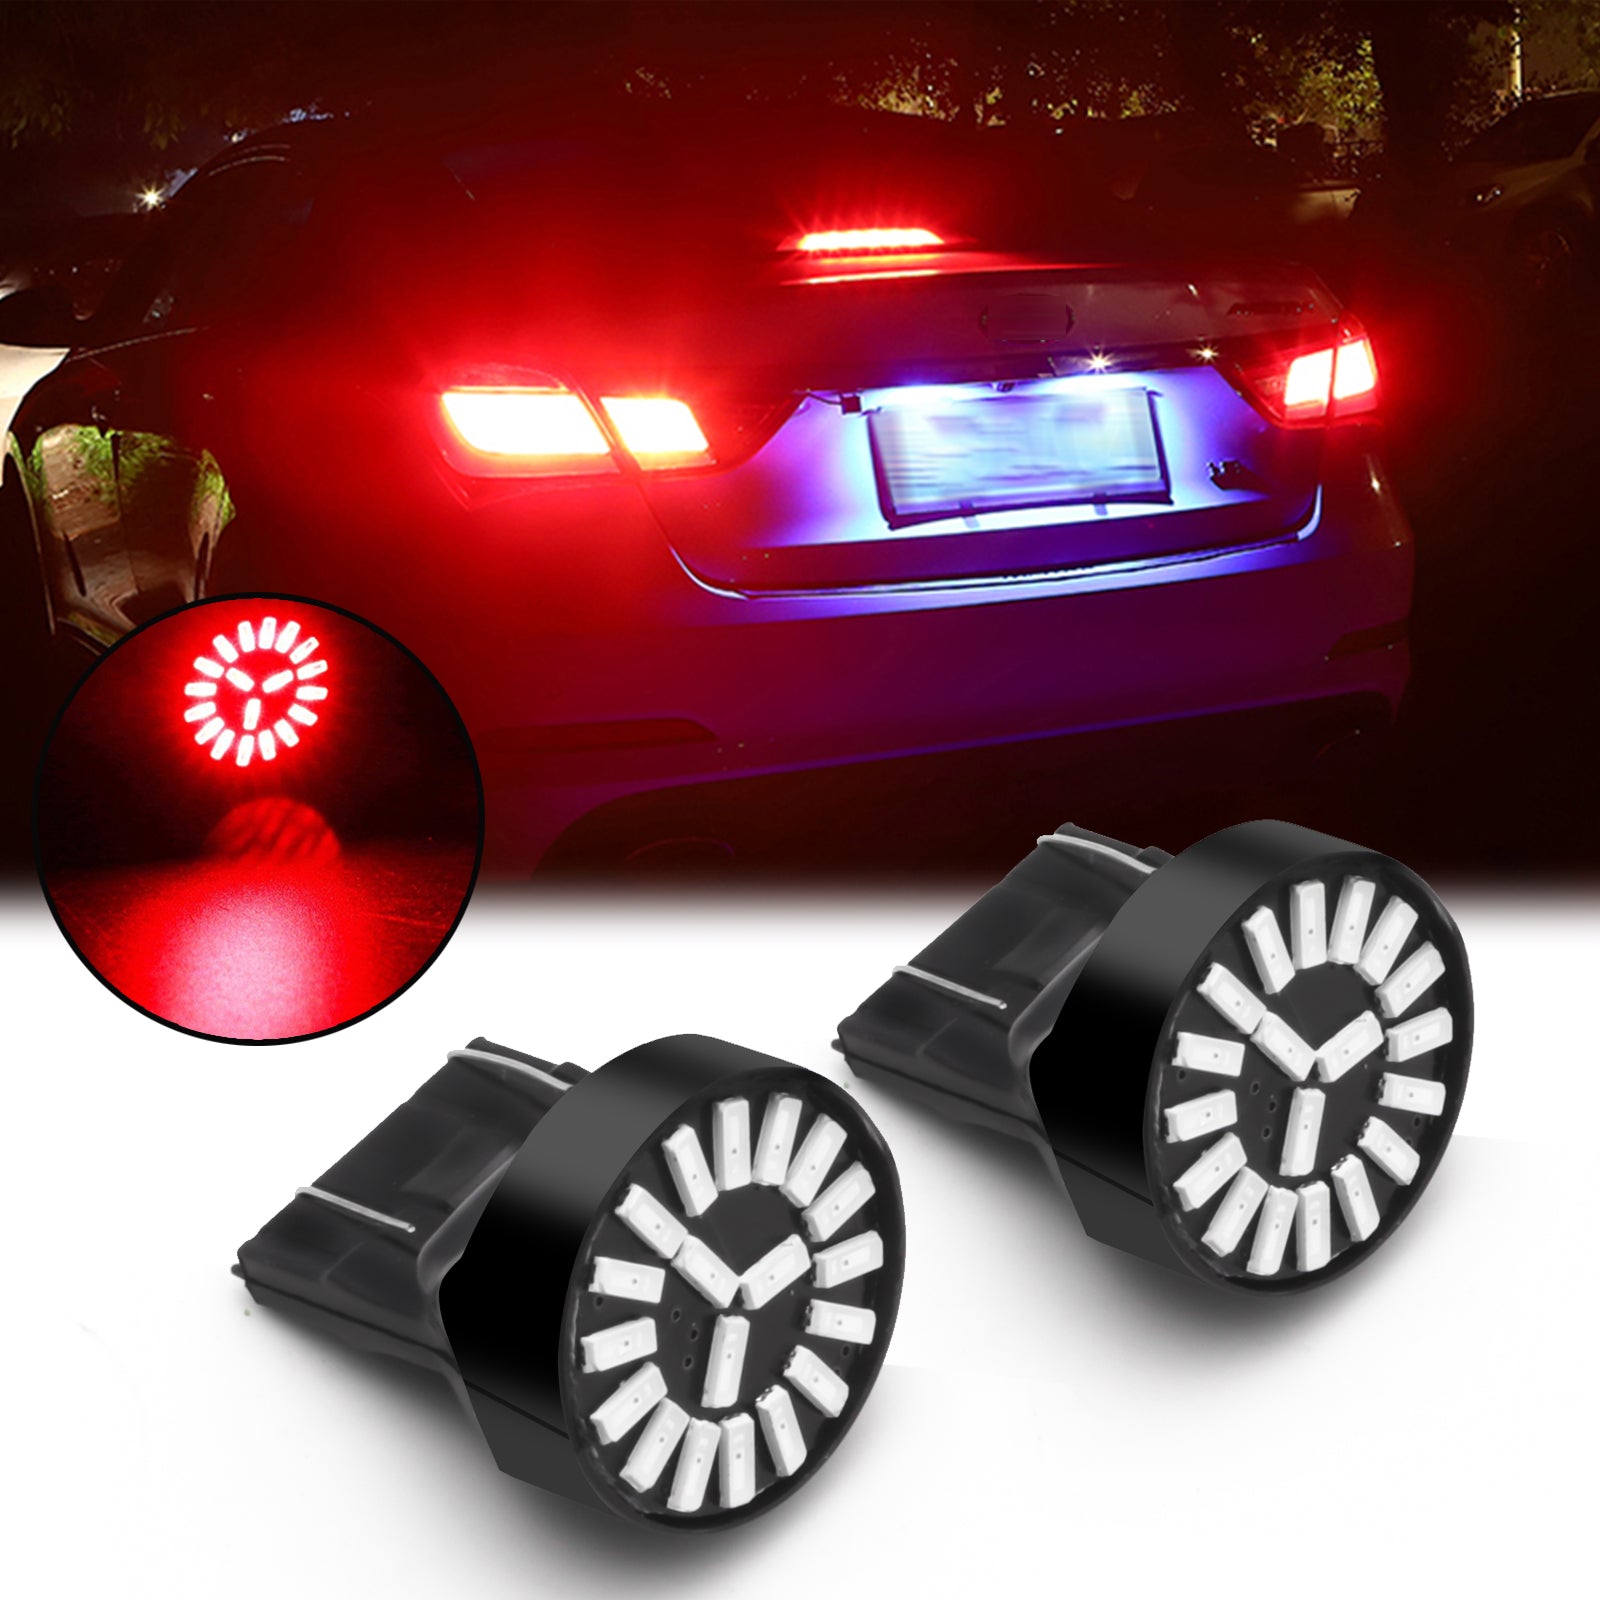 SEALIGHT️ J2 7440 7443 LED Backup Reverse Light and Tail Brake Parking  Light 2Pcs